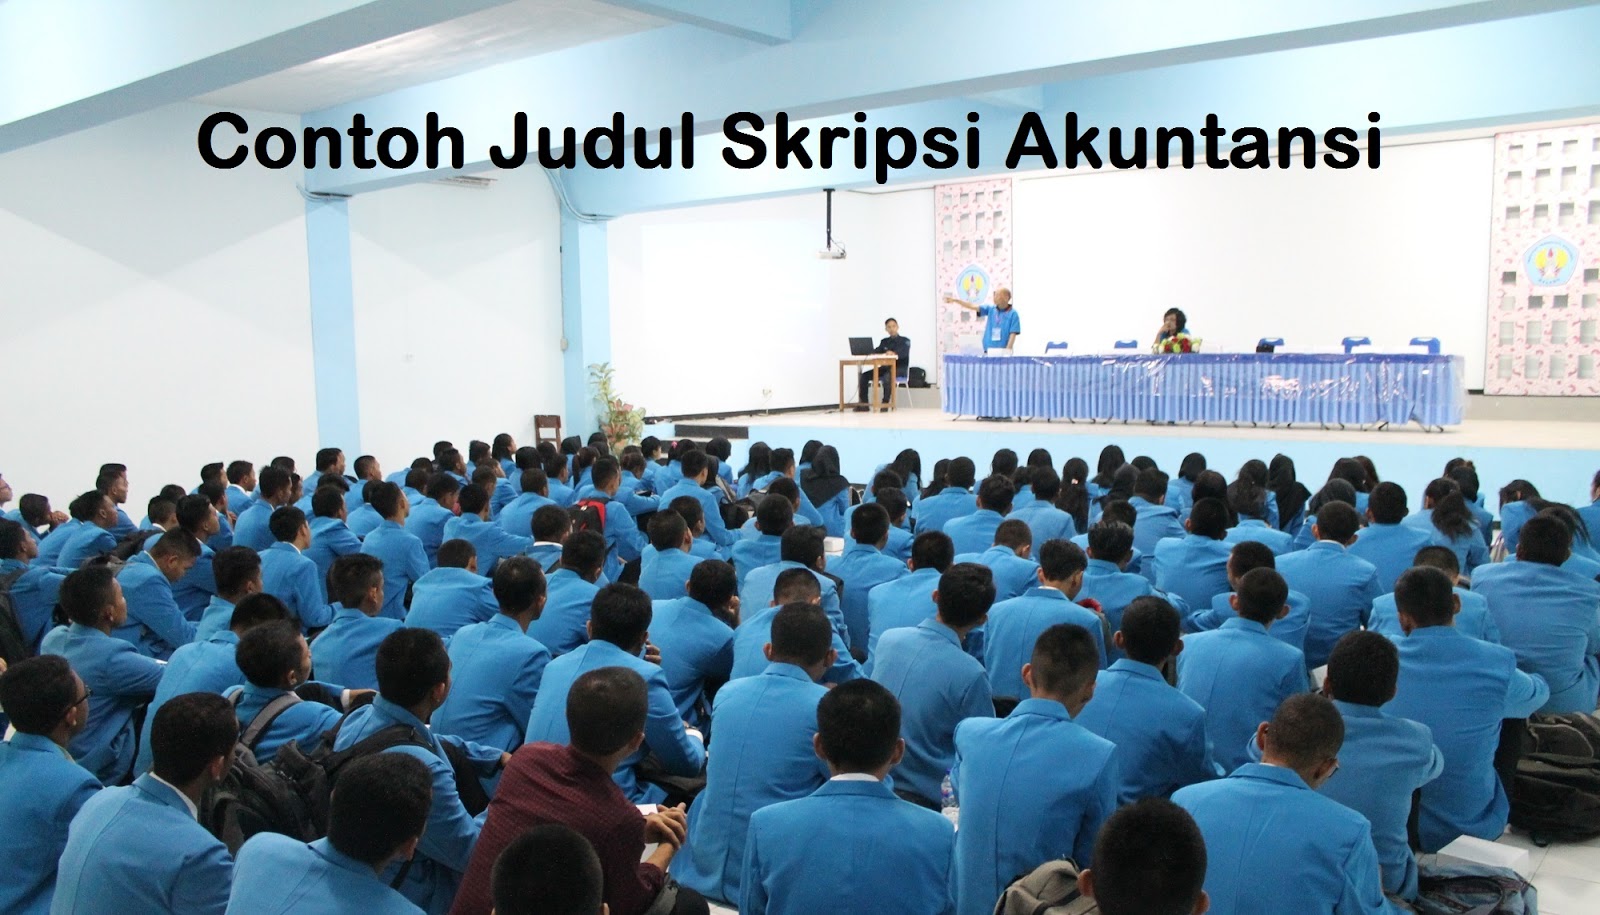 Contoh Judul Skripsi Akuntansi Universitas Indonesia 